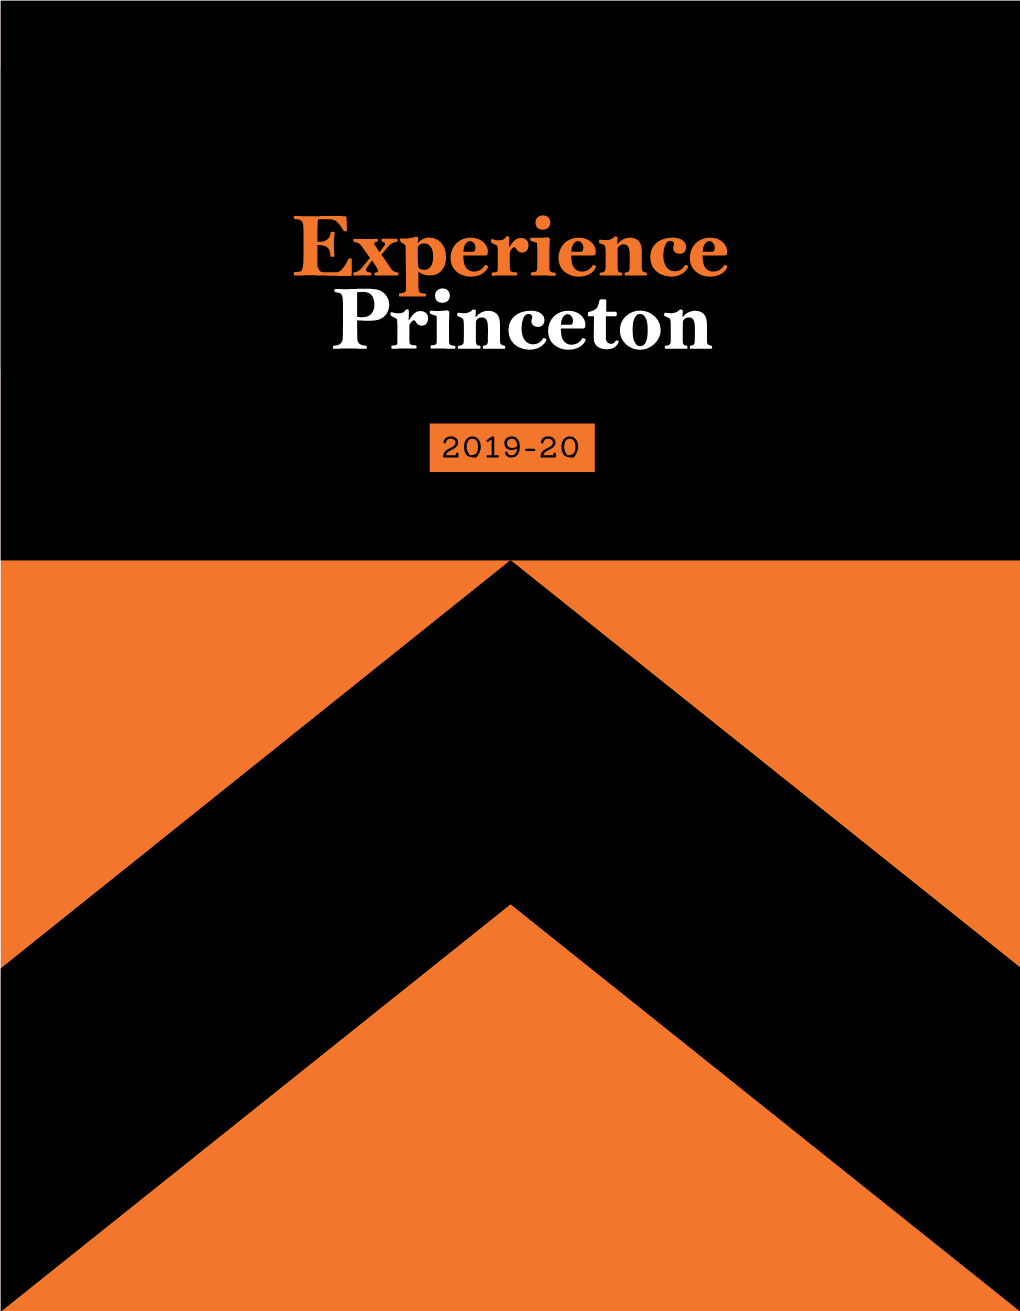 Experience Princeton 2019-20